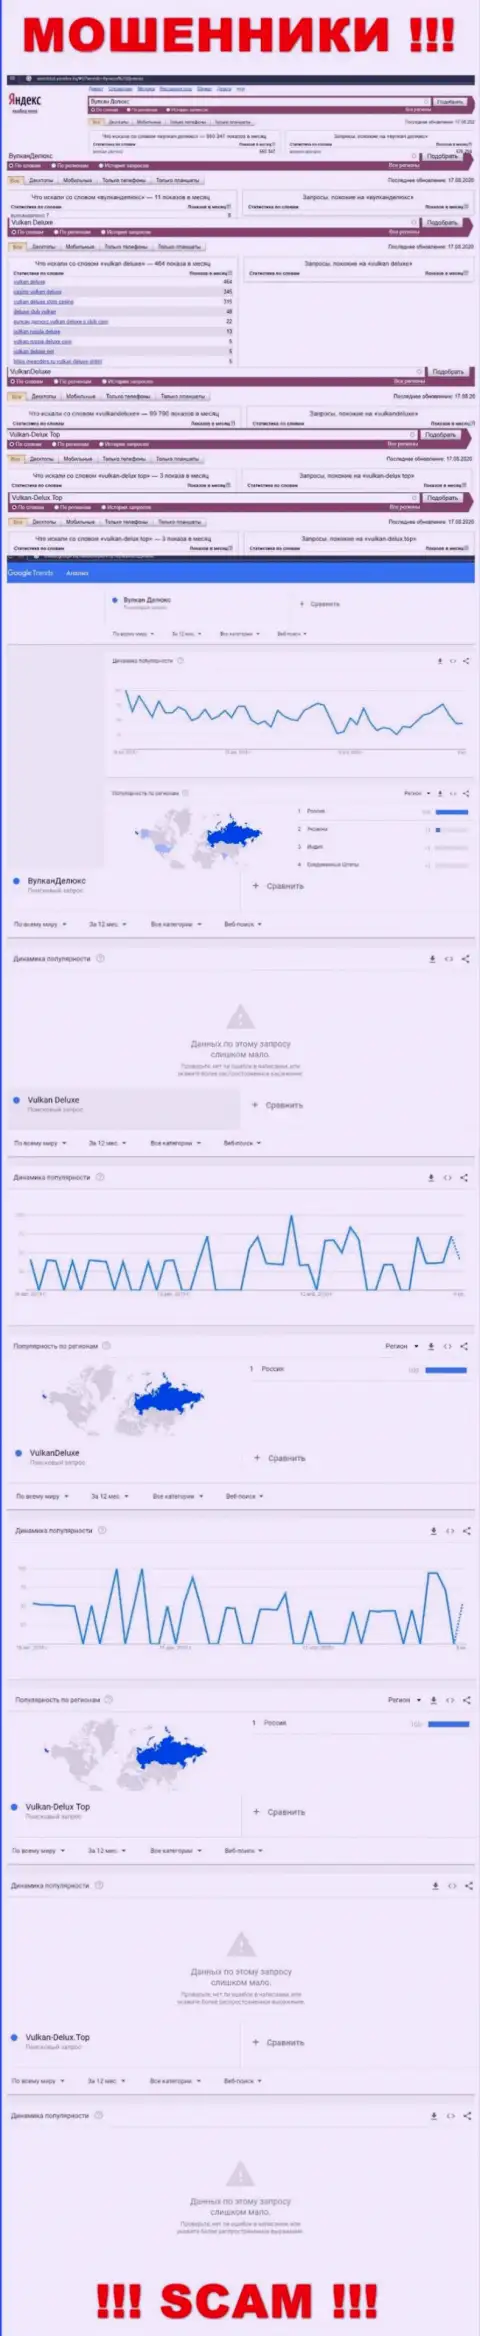 Статистические показатели запросов по ворюгам Вулкан Делюкс во всемирной сети internet